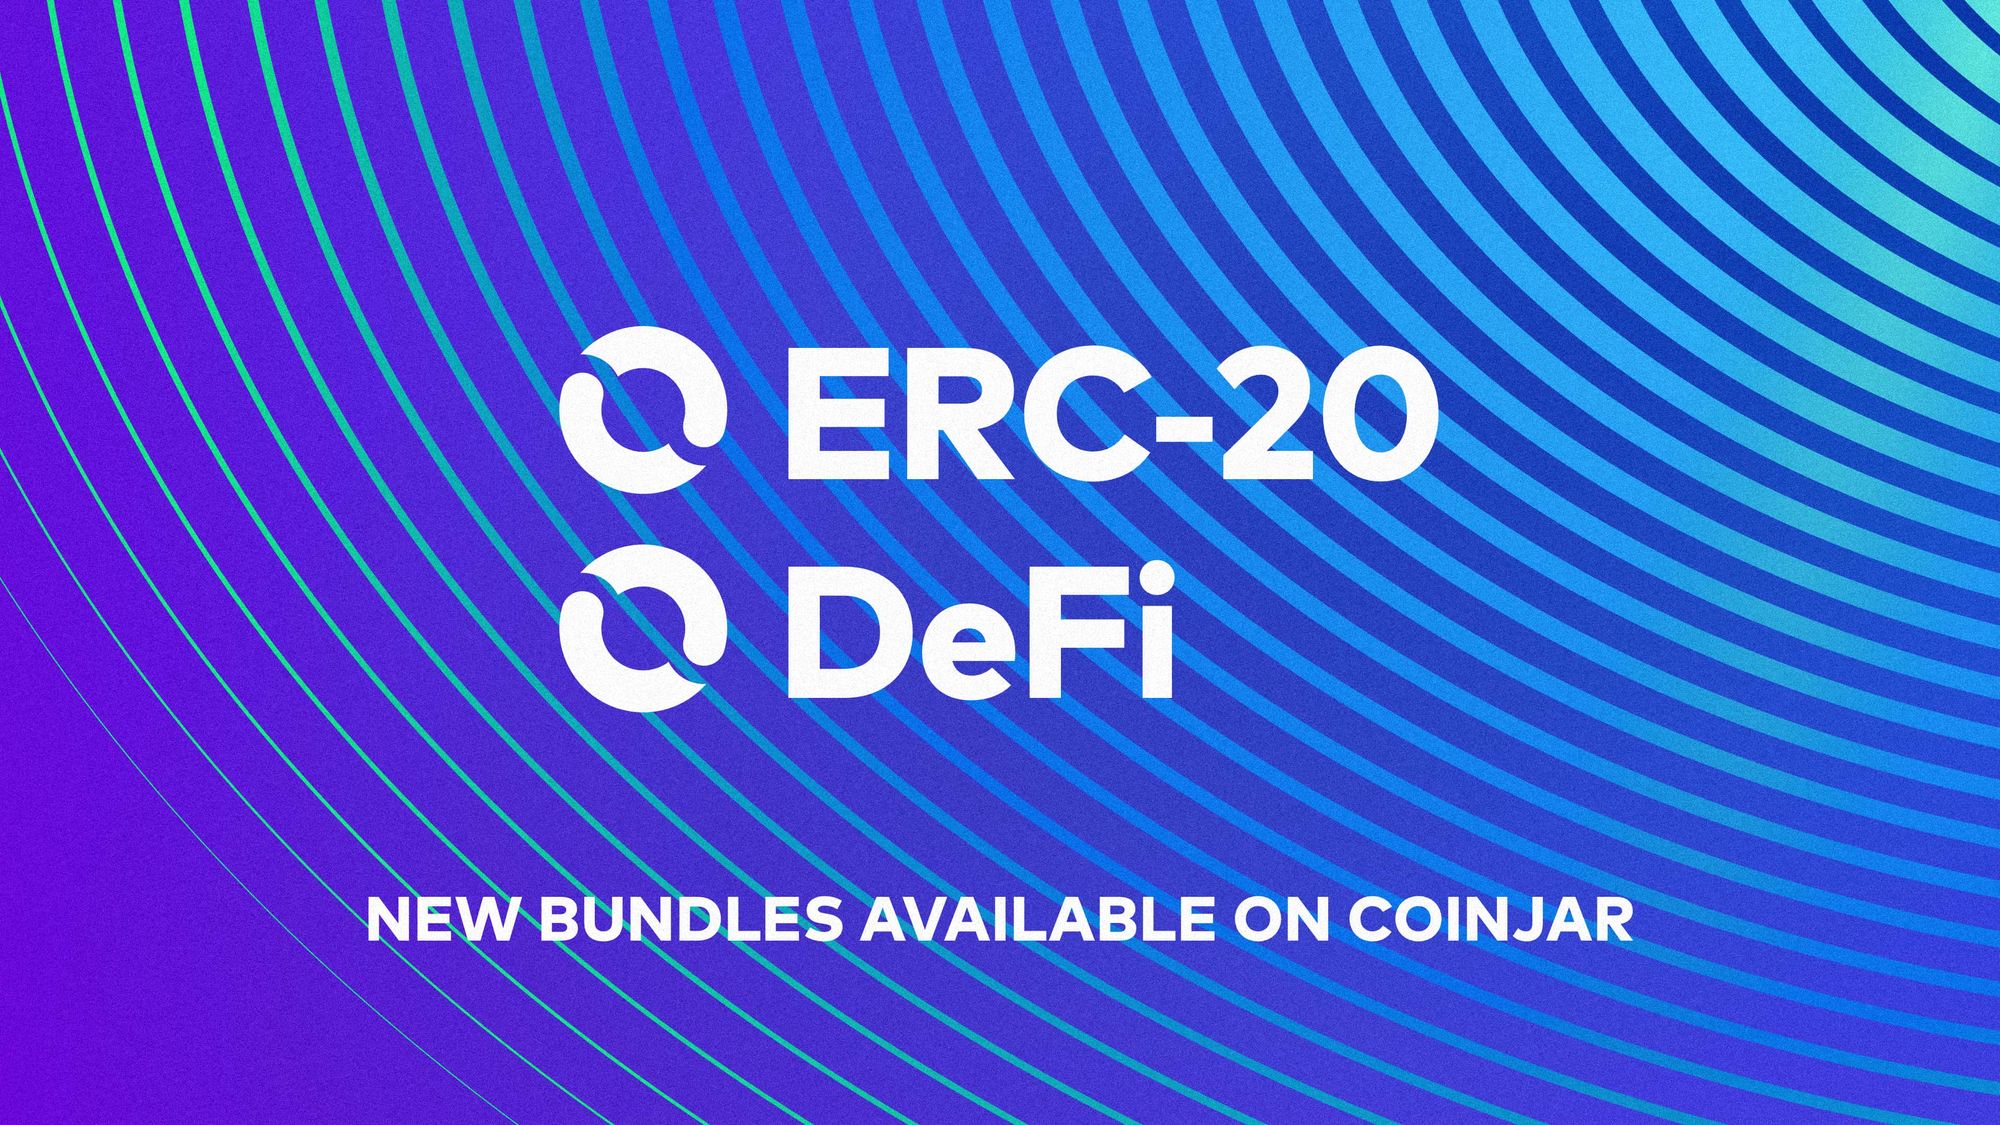 Introducing DeFi & ERC-20 CoinJar Bundles!